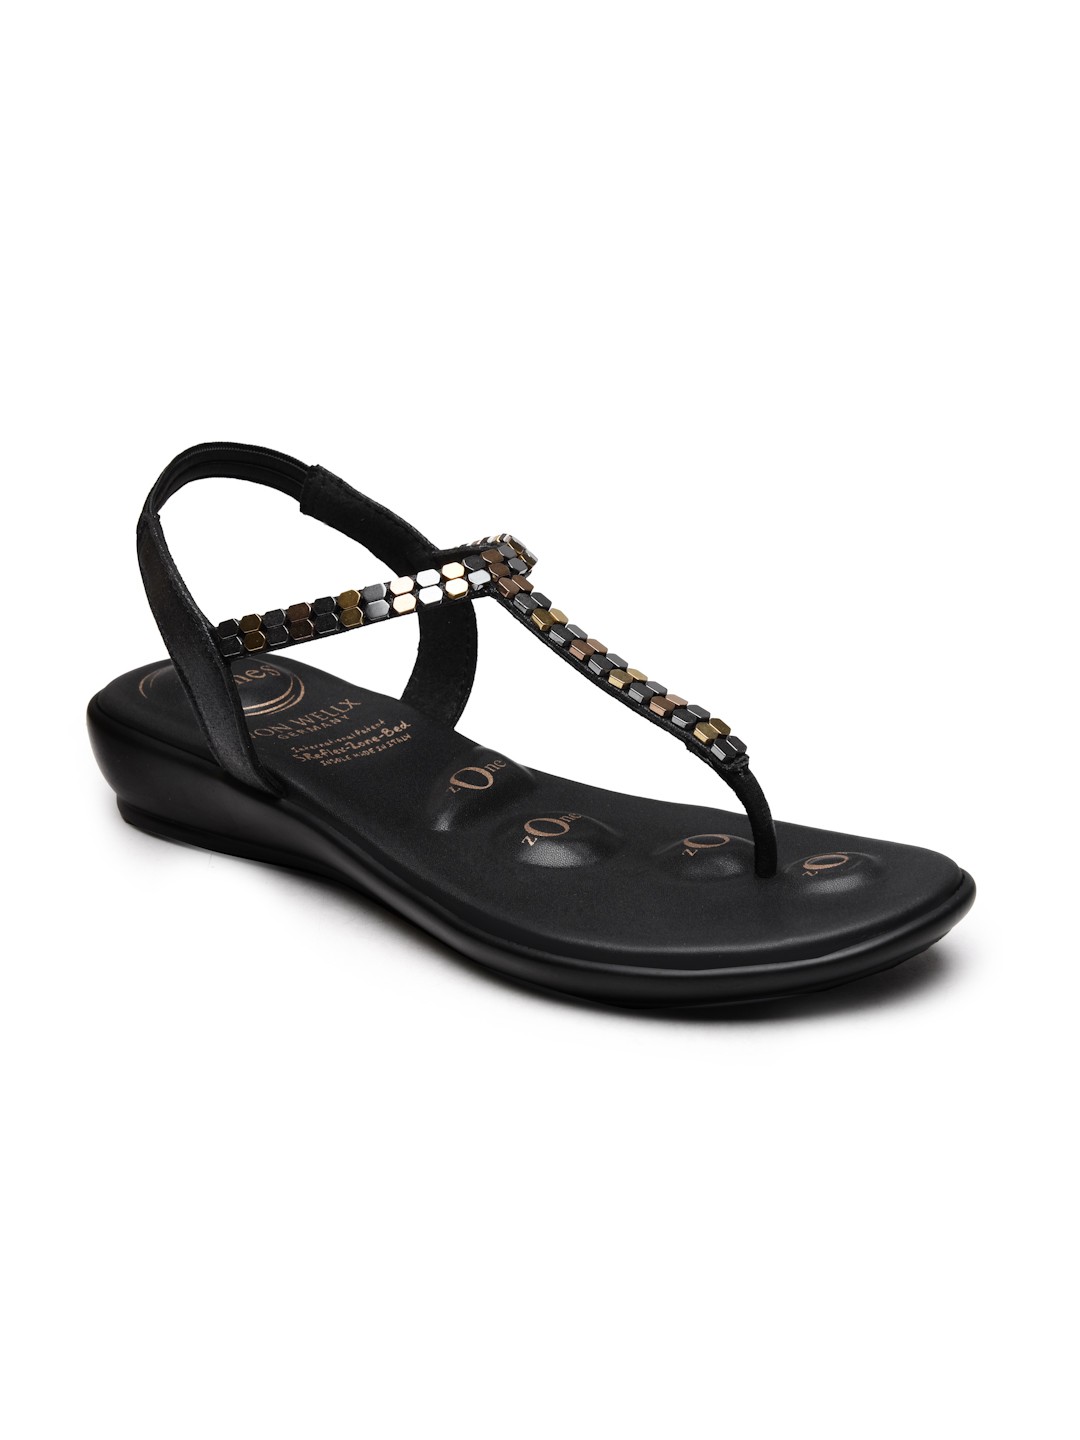 Buy Von Wellx Germany Comfort Women's Black Casual Sandals Regina Online in Srinagar